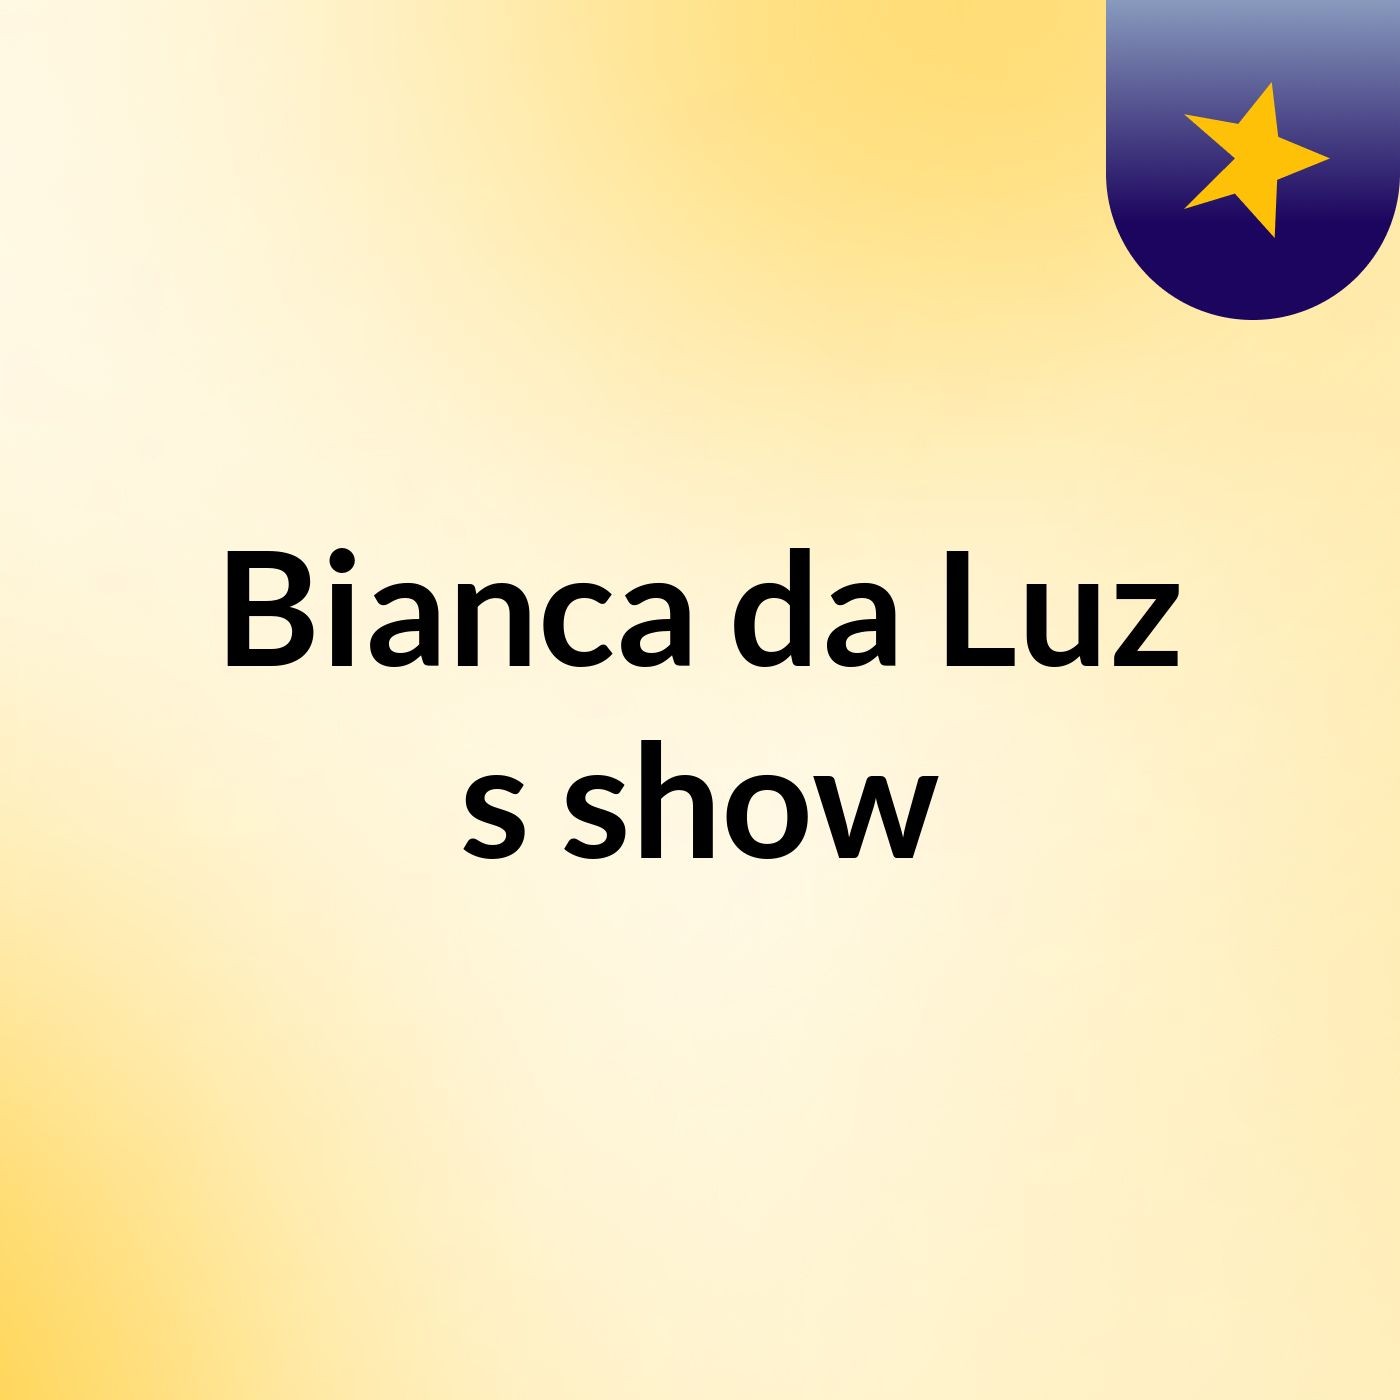 Episódio 3 - Bianca da Luz's show